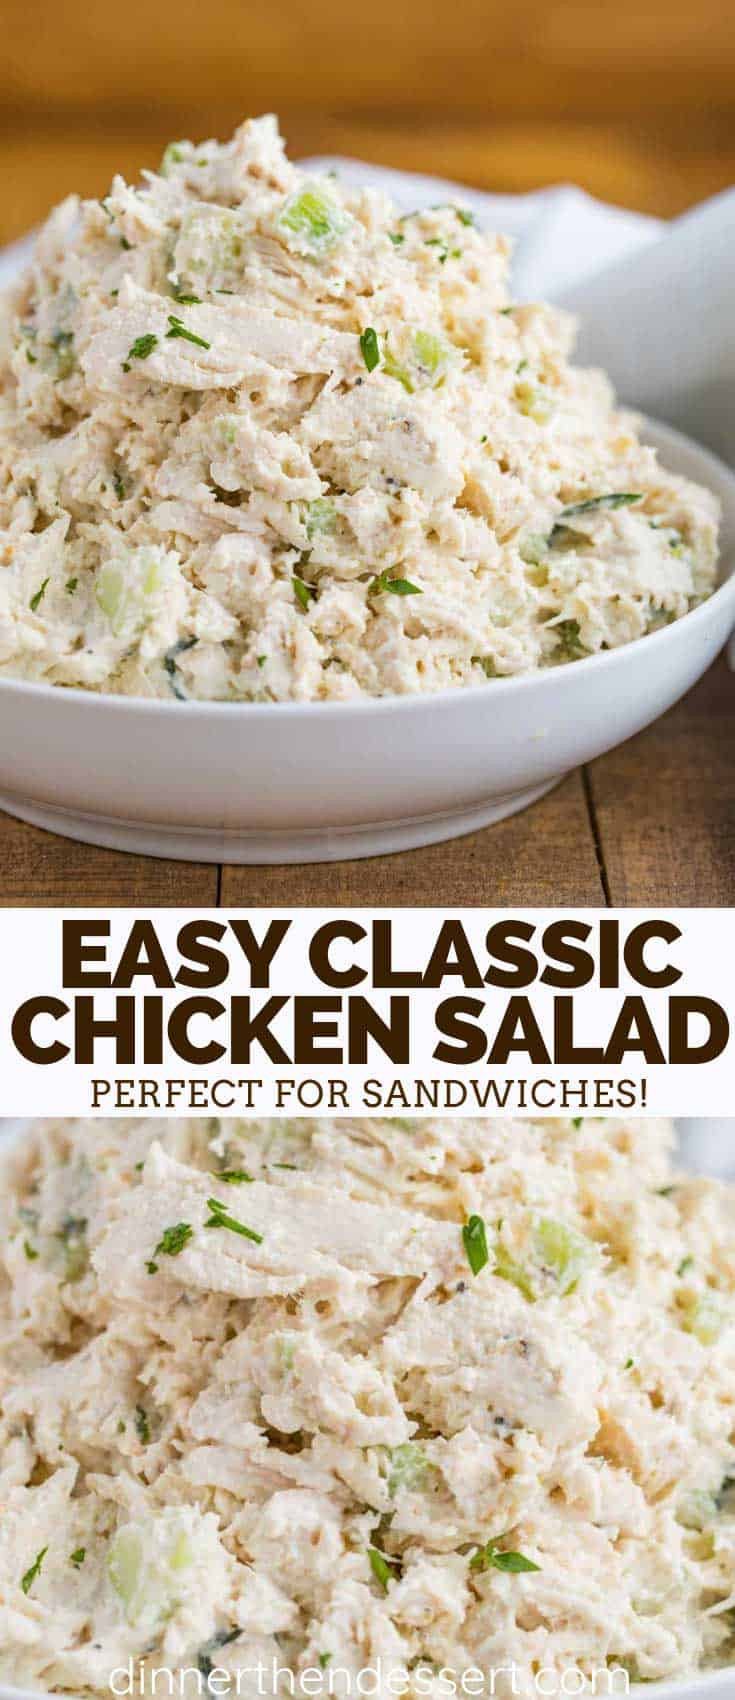 Classic Chicken Salad Recipe Luxury Classic Chicken Salad Dinner then Dessert